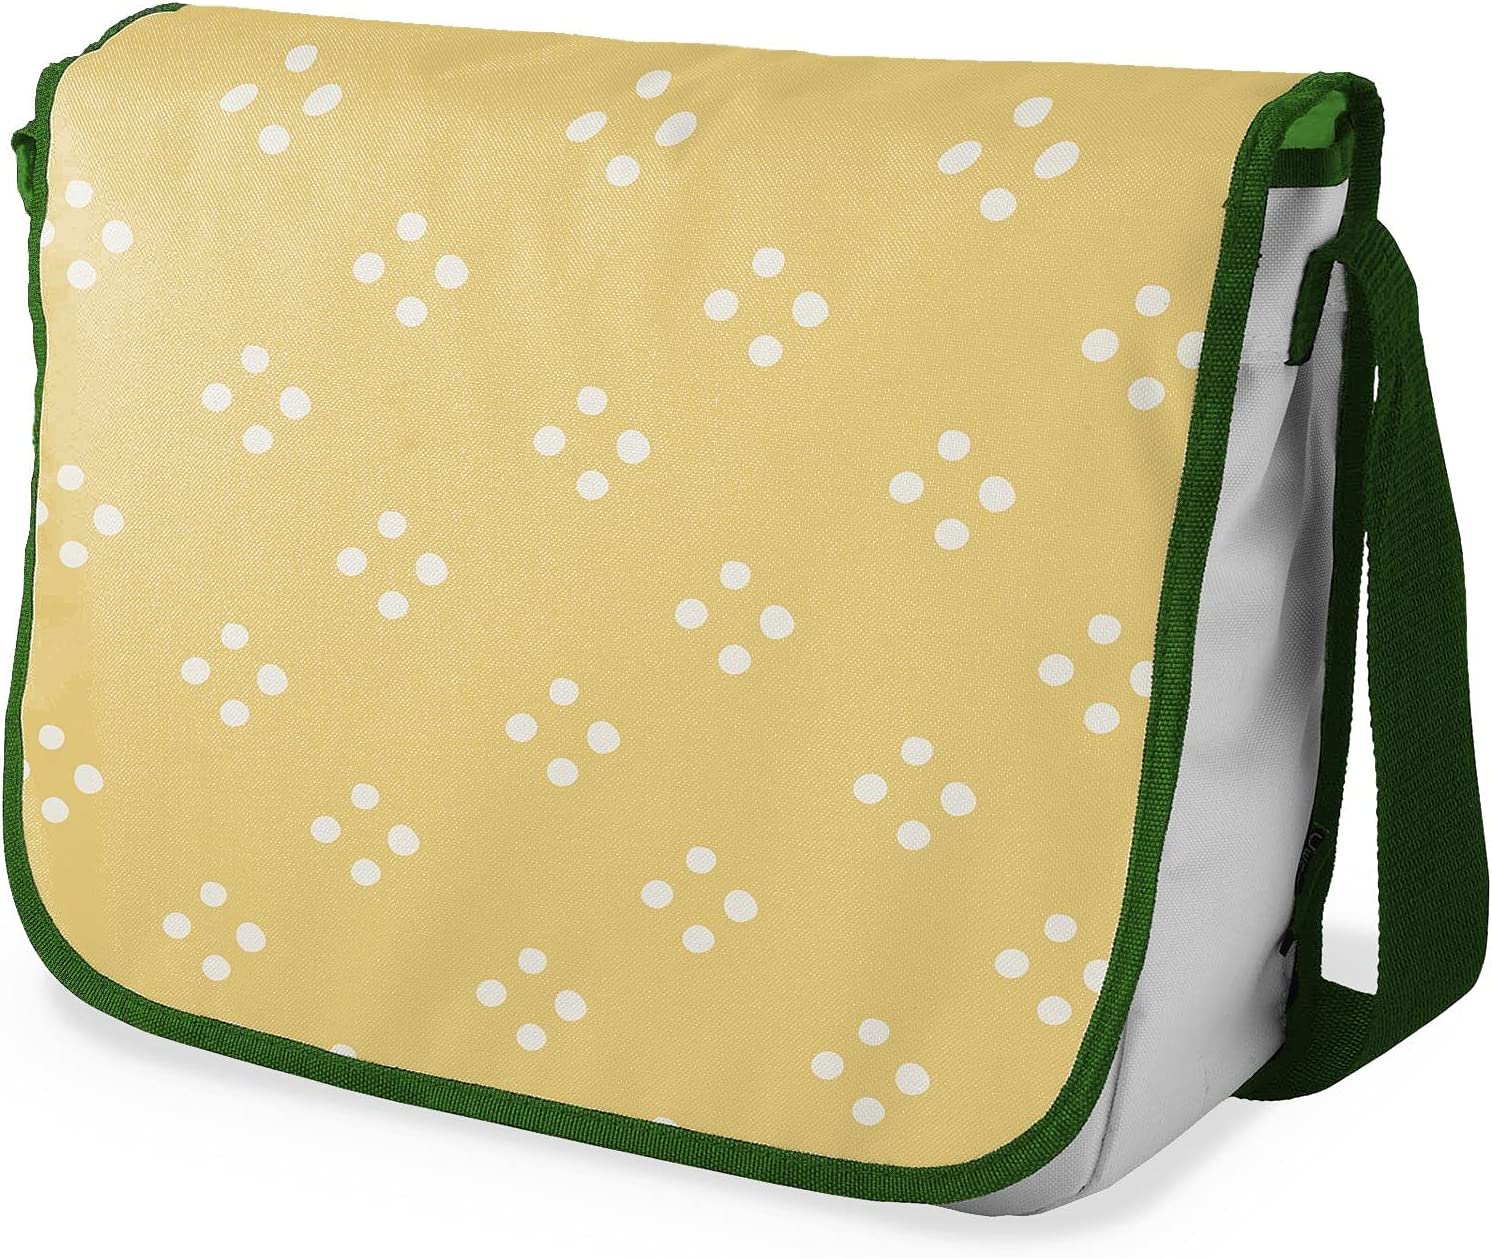 Bonamaison 4 White Dot Pattern Messenger School Bag w/ Khaki Strap RRP 16.74 CLEARANCE XL 10